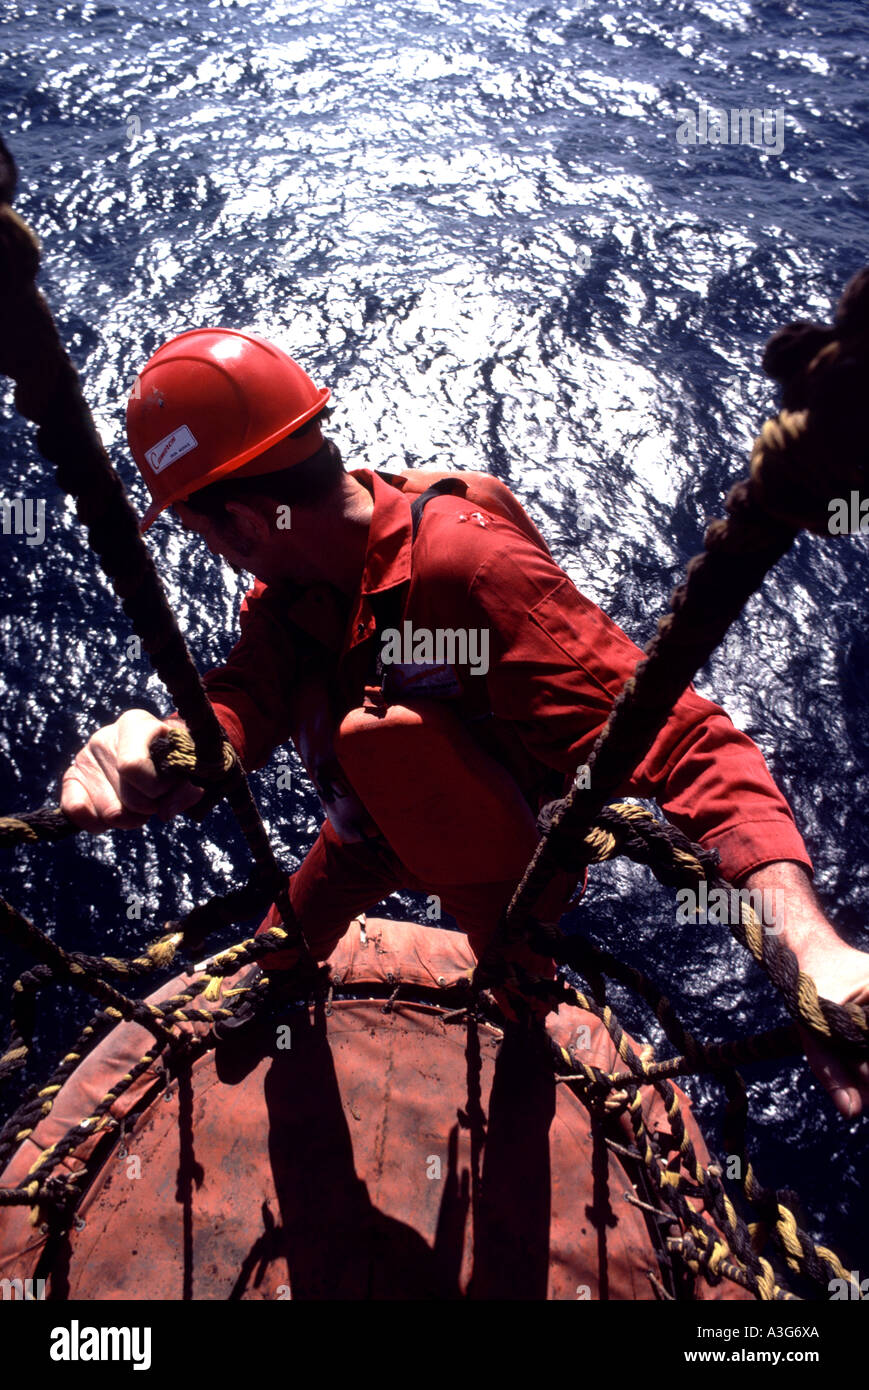 Valiente trabajador de la industria del petróleo y gas se ve abajo como él los saldos por encima de una plataforma off shore para realizar tareas de mantenimiento. Foto de stock